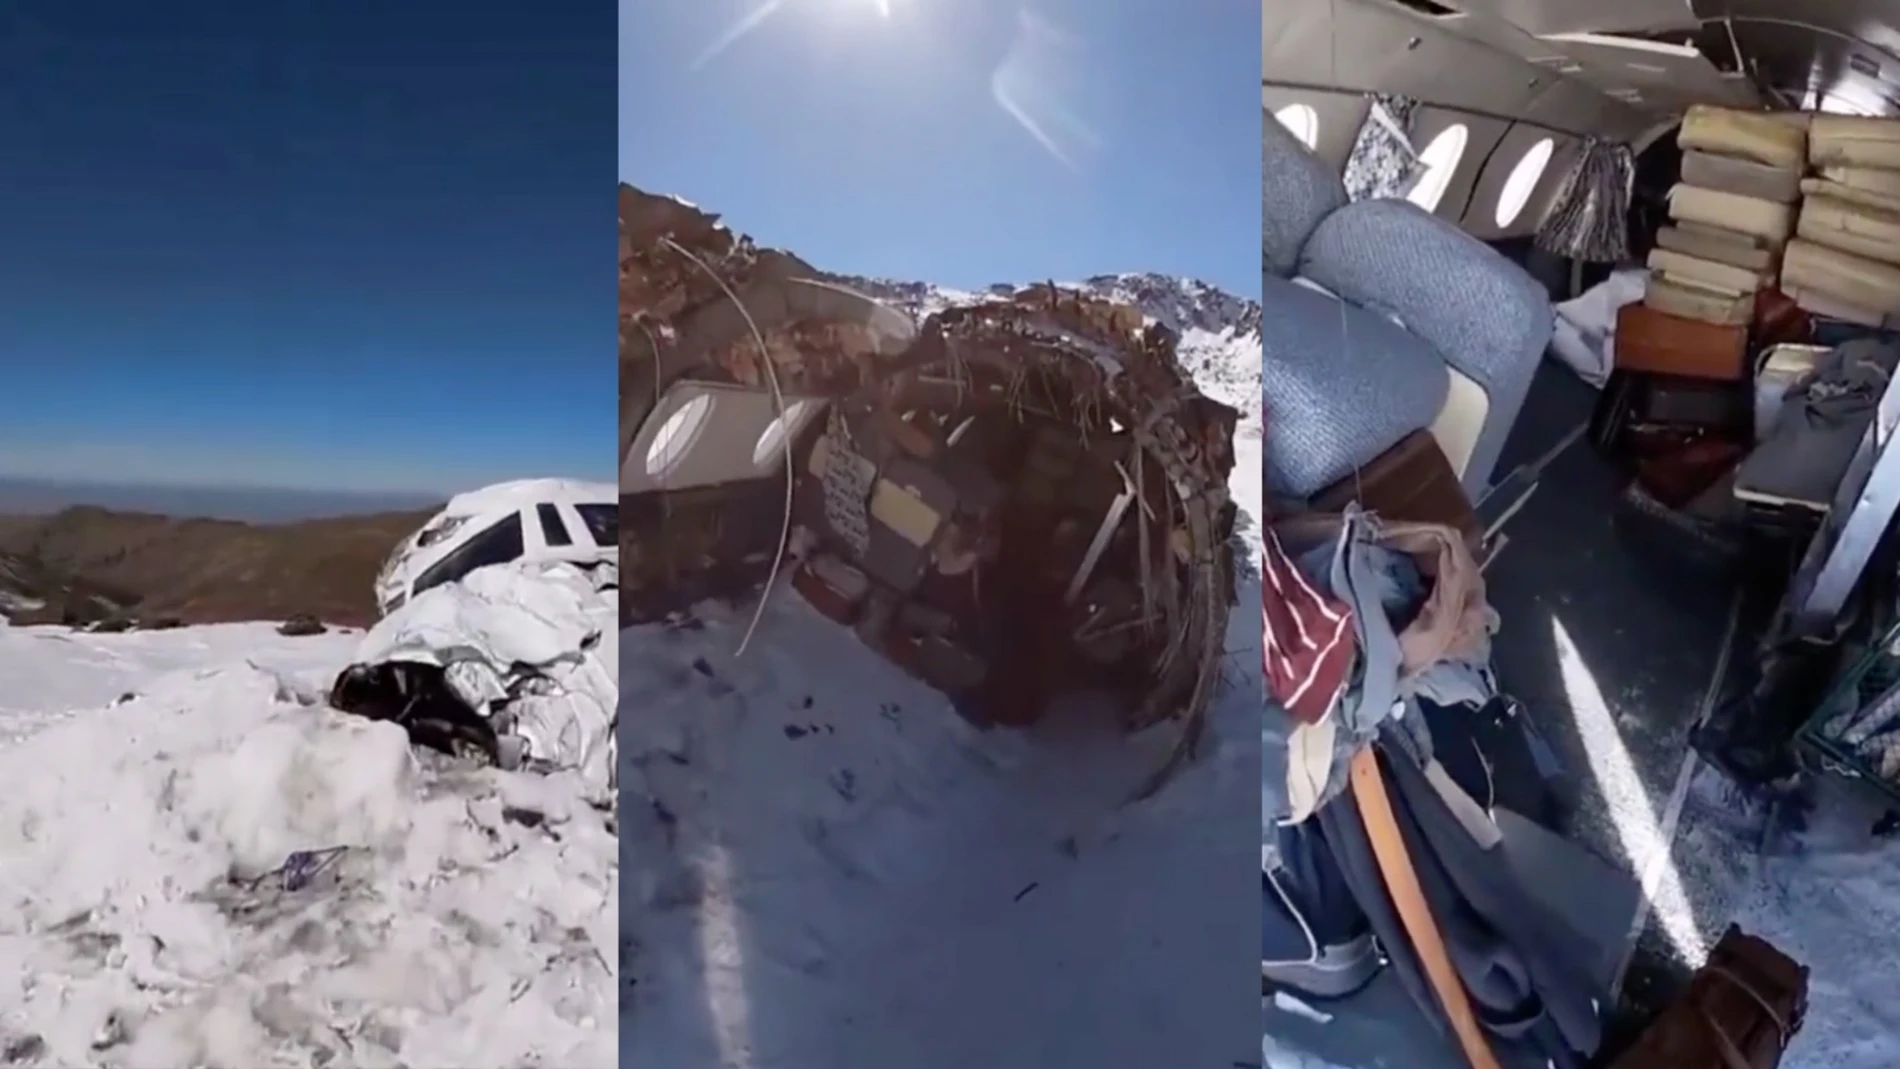 Un joven encuentra los restos del avión utilizado durante el rodaje de "La sociedad de la nieve" mientras esquiaba en Sierra Nevada